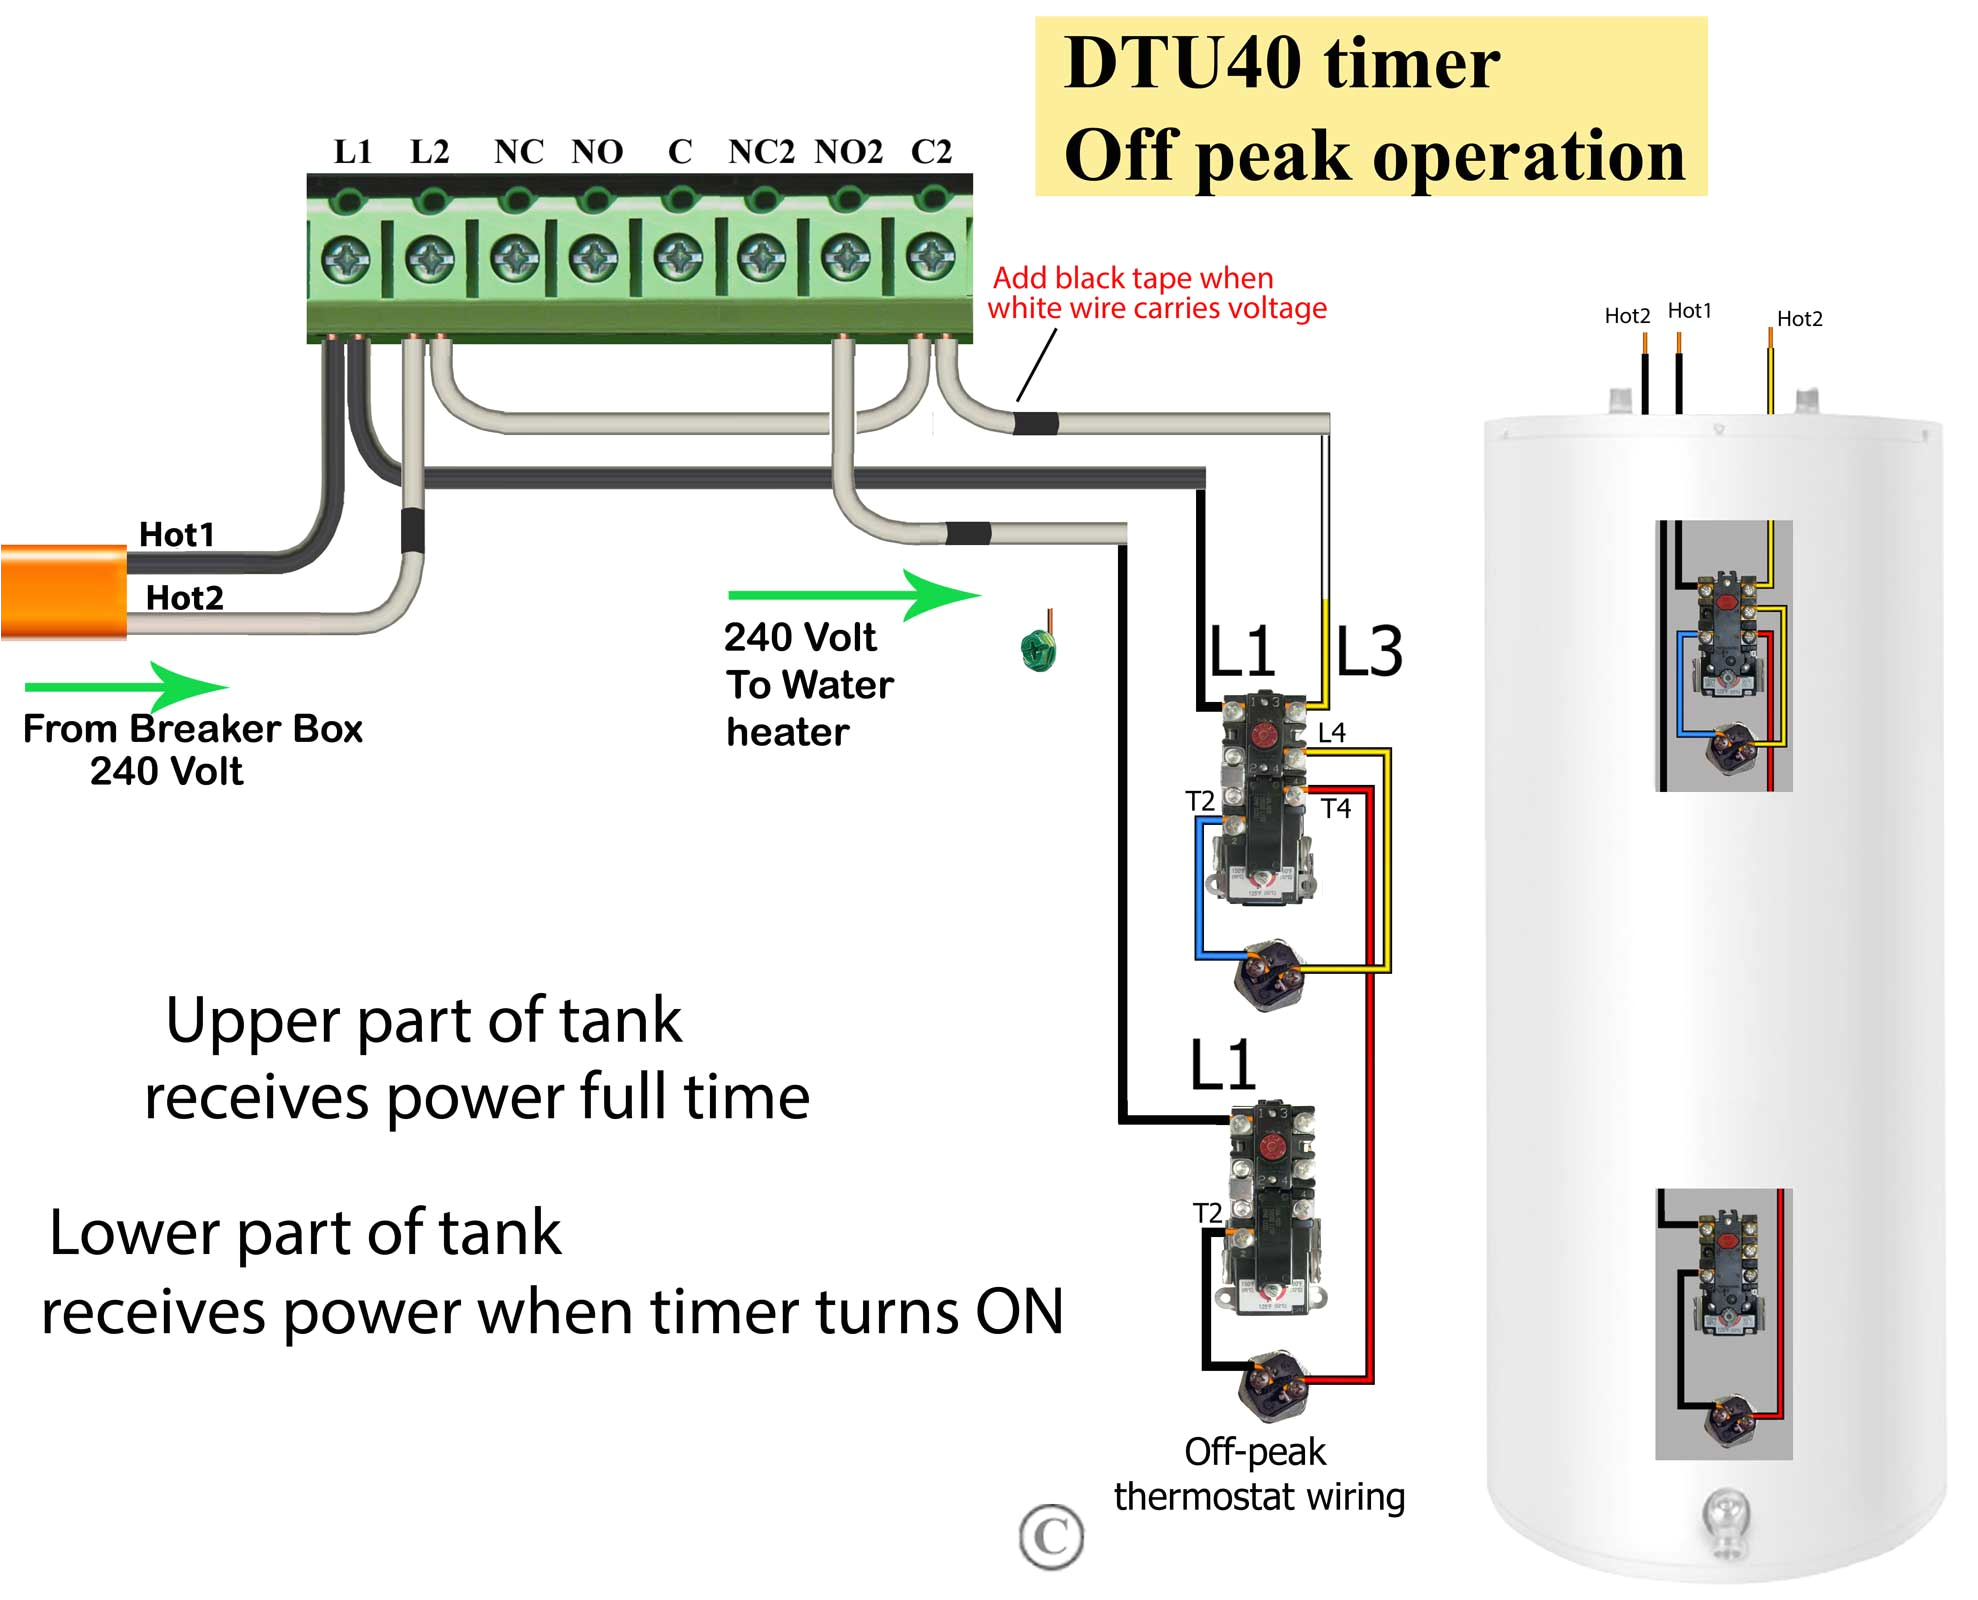 wiring diagrams instructions tork dtu timer off peak operation larger image